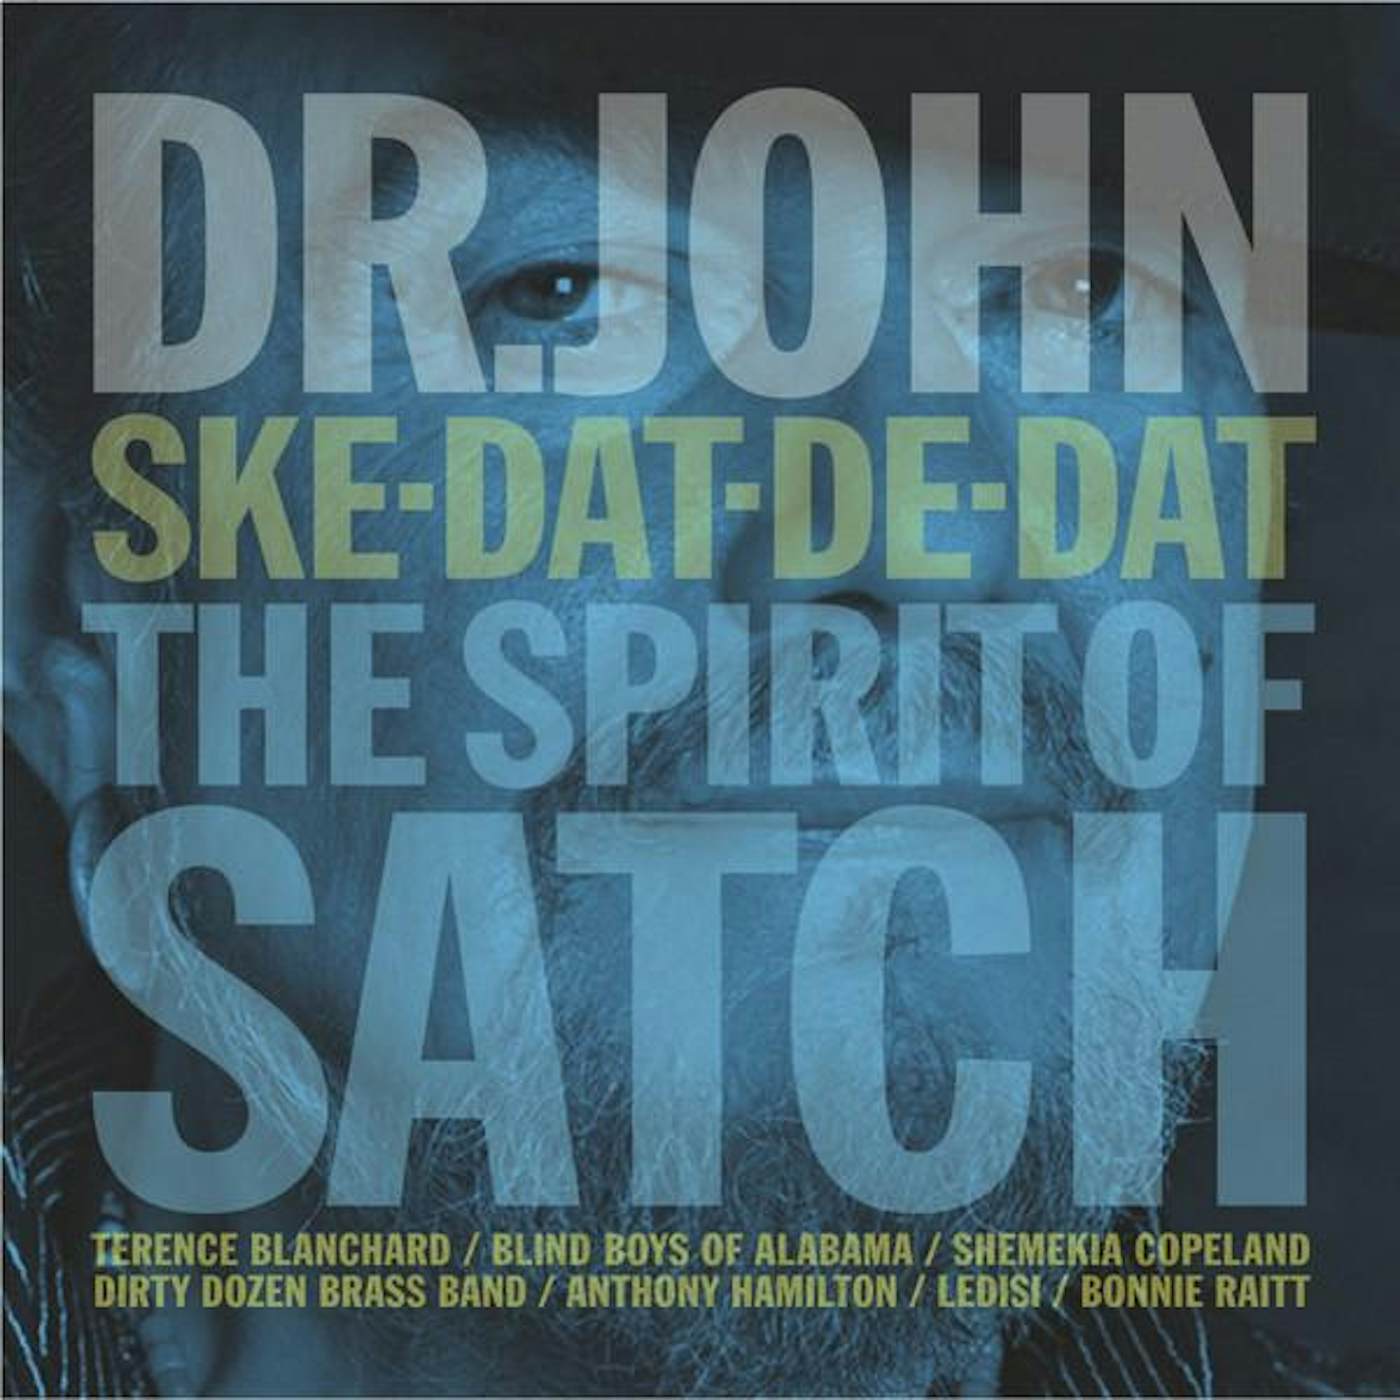 Dr. John SKE DAT DE DAT: THE SPIRIT OF SATCH CD